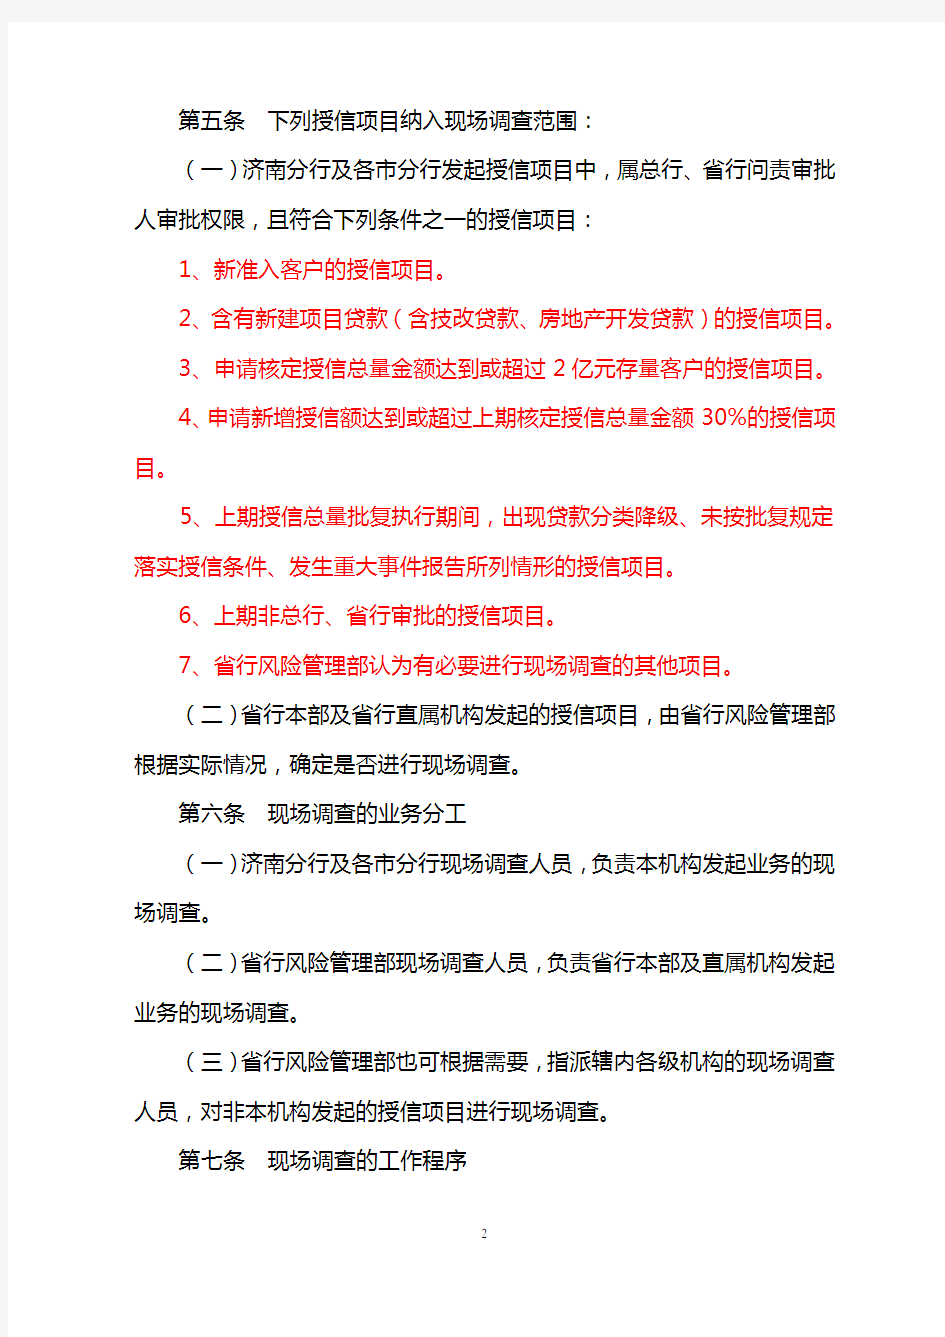 中国银行股份有限公司山东省分行授信项目现场调查管理办法